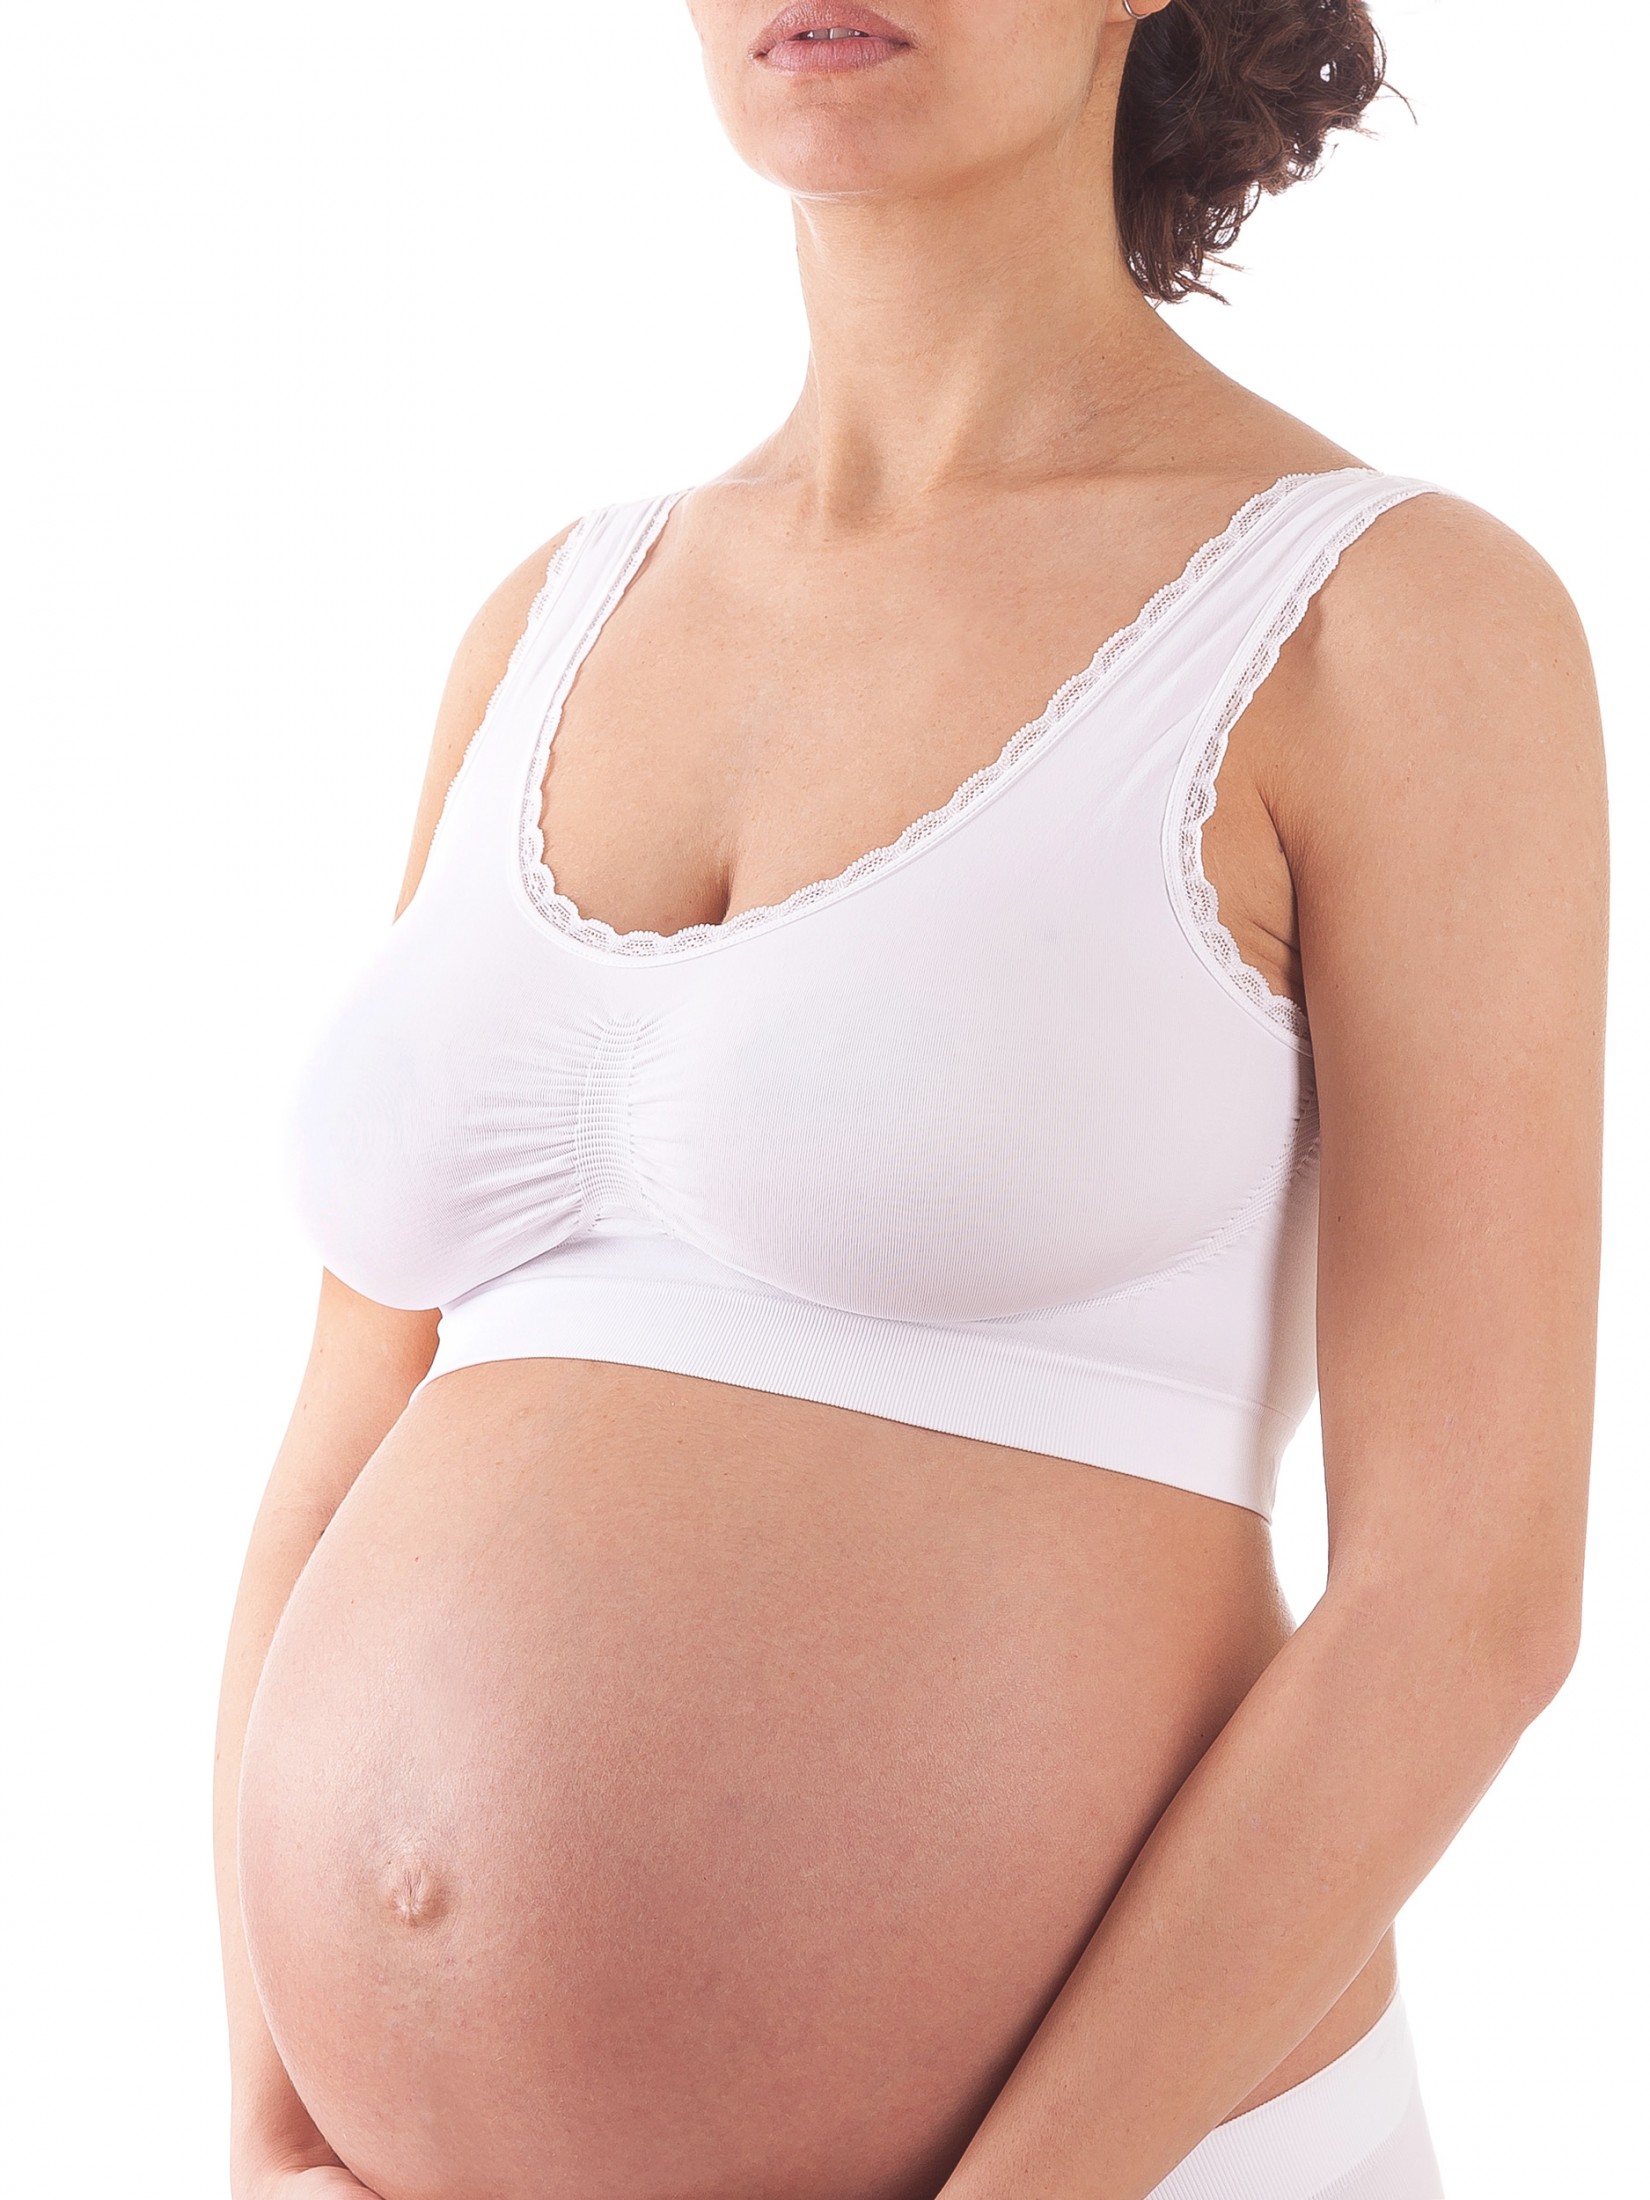 Бюстгальтер для беременных женский Bellissimo Reggiseno Top Ultra Comfort белый M/L